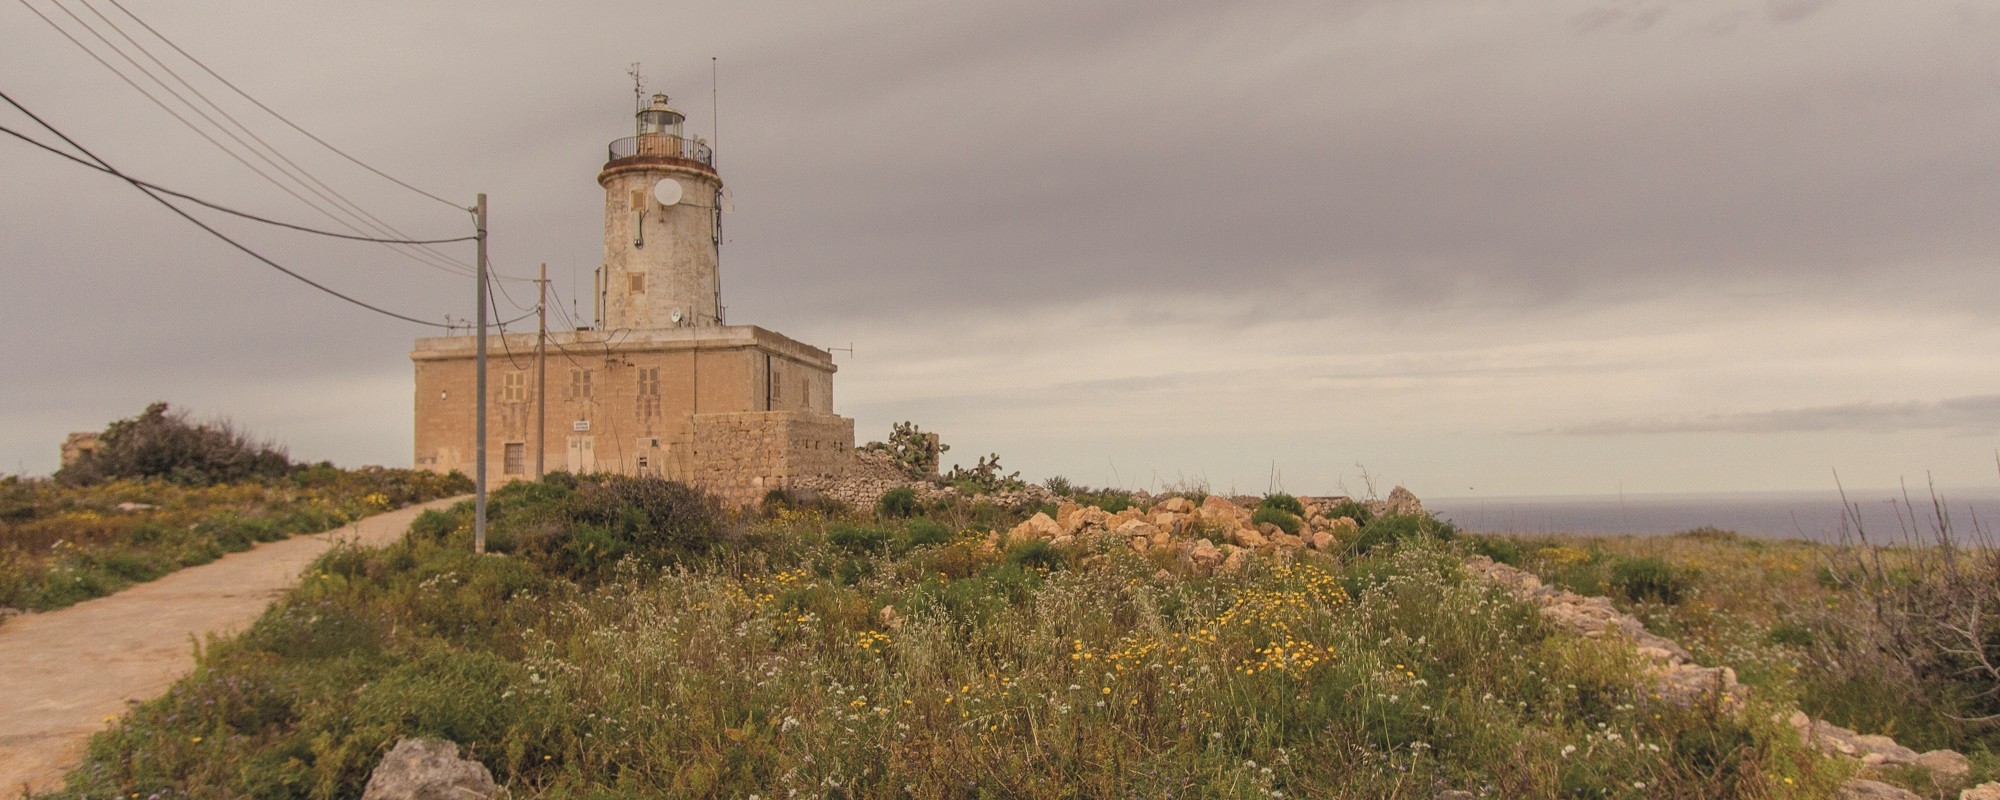 Gozo lighthouse